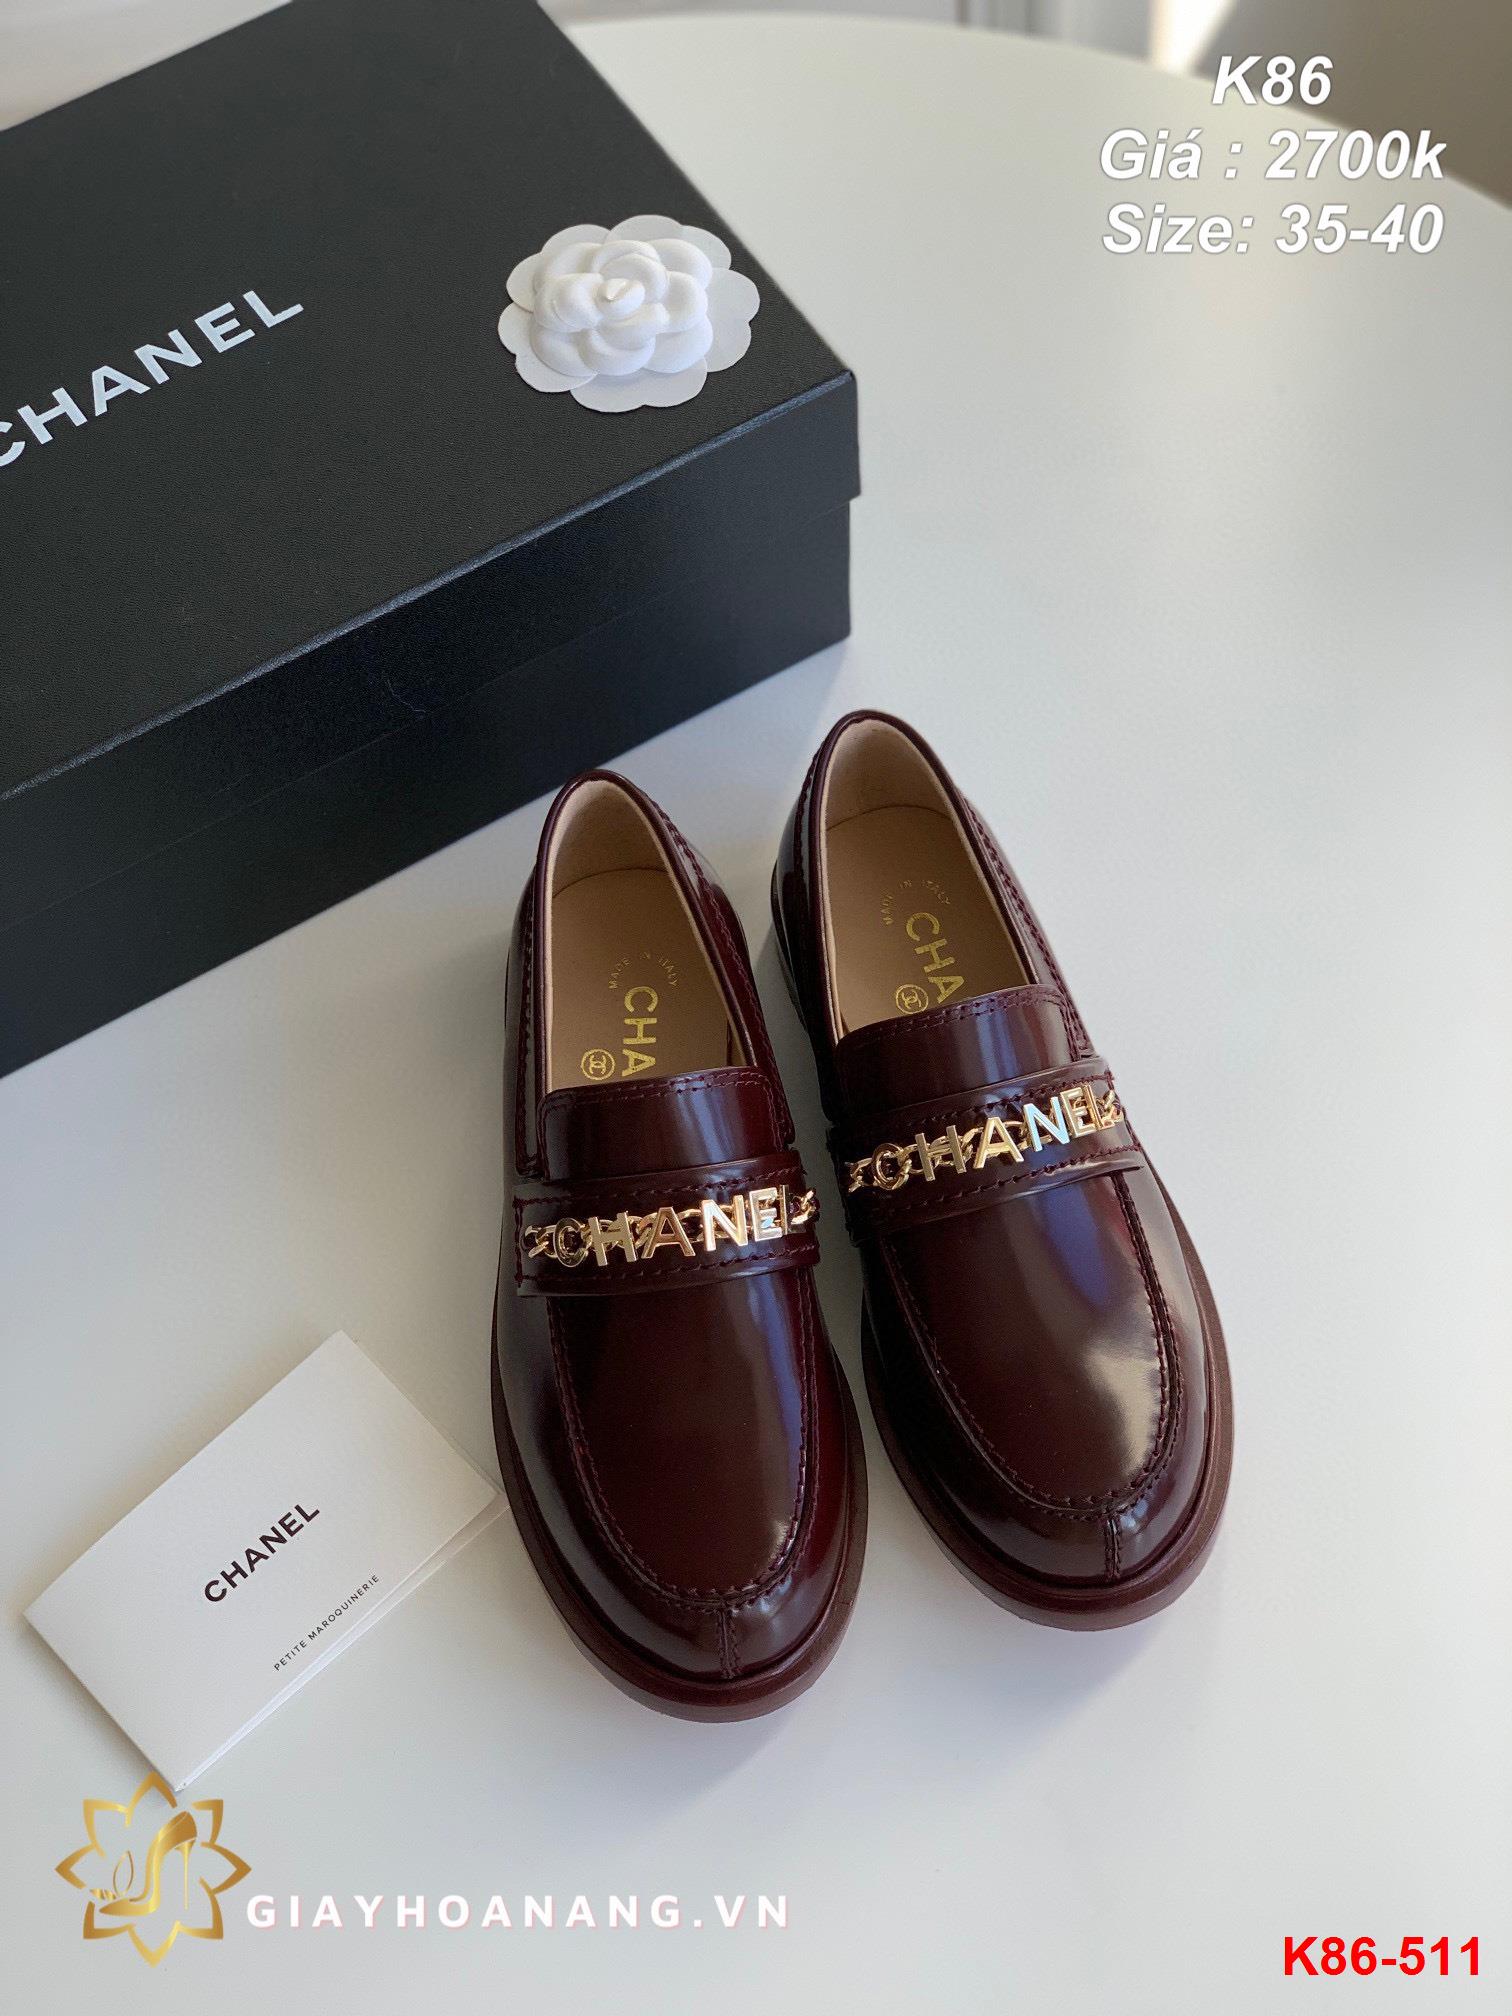 K86-511 Chanel giày lười siêu cấp